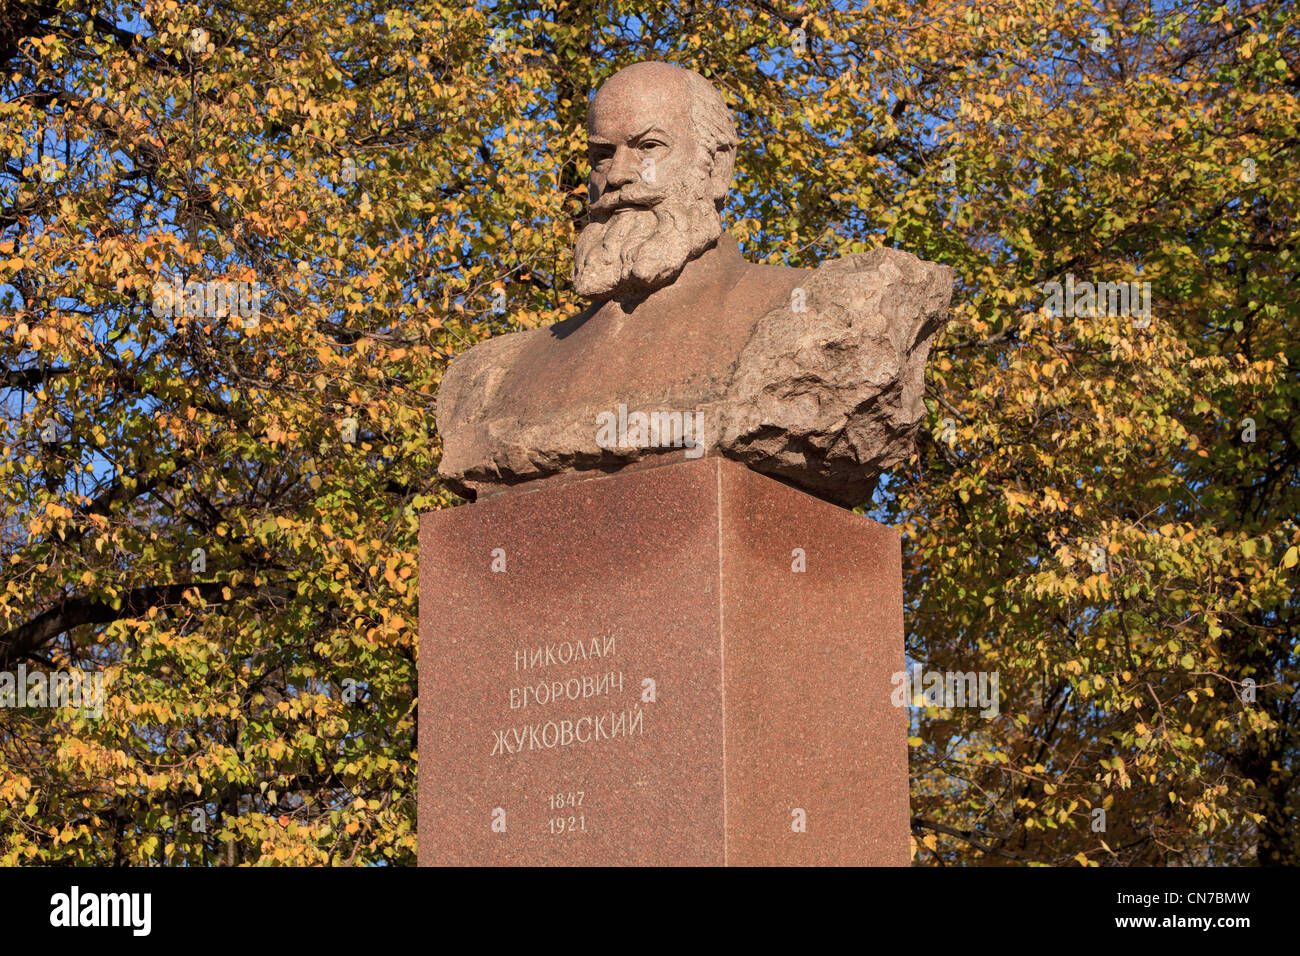 Statua della Russia sovietica aerodinamica scienziato Nikolay Yegorovich Zhukovsky (1847-1921) a Mosca, Russia Foto Stock